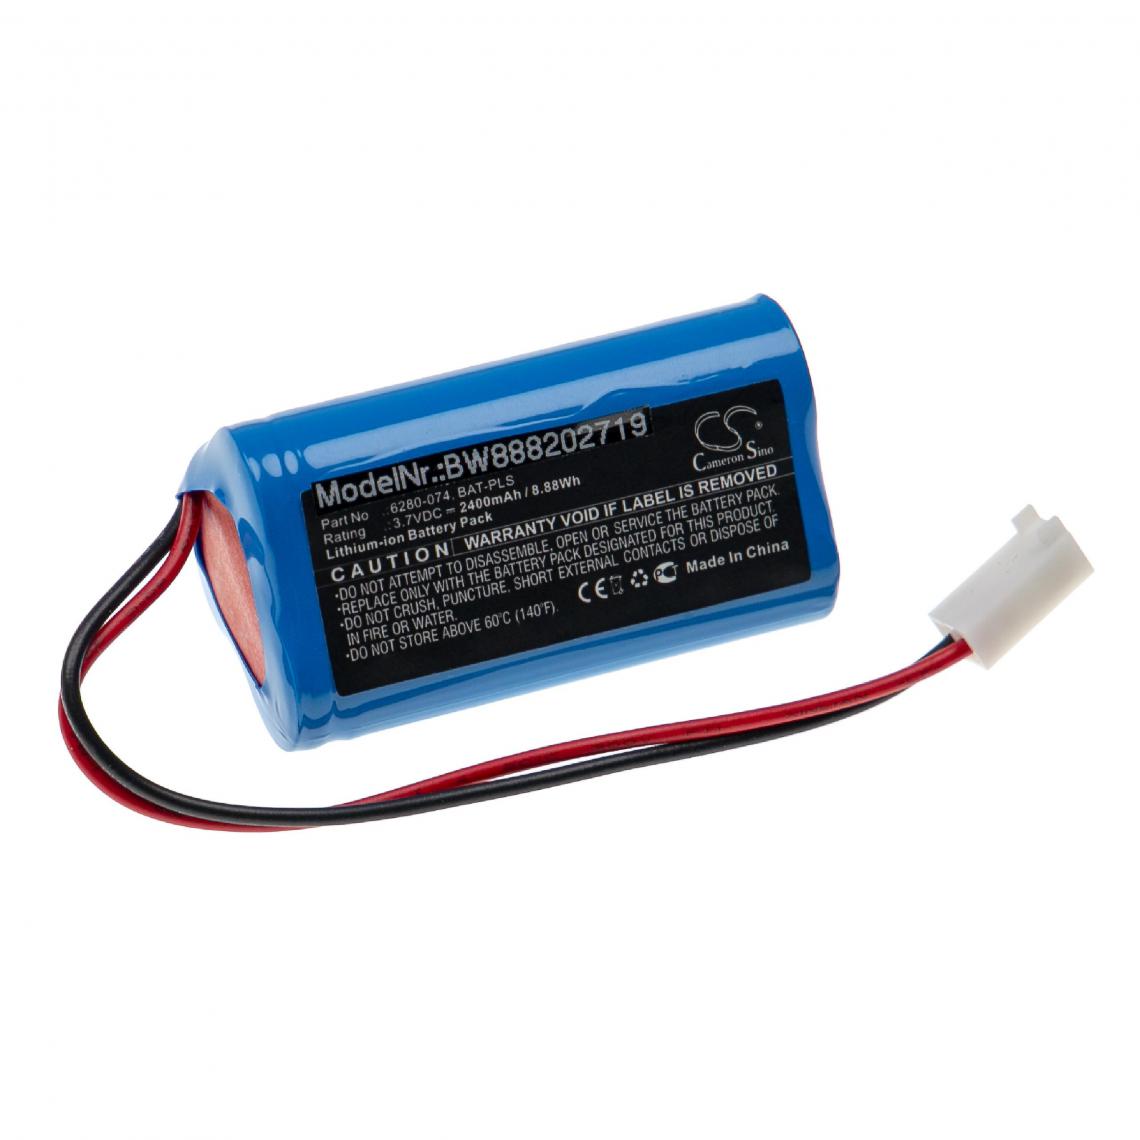 Vhbw - vhbw Batterie compatible avec Monarch Pocket LED Stroboscope outil de mesure (2400mAh, 3,7V, Li-ion) - Piles rechargeables